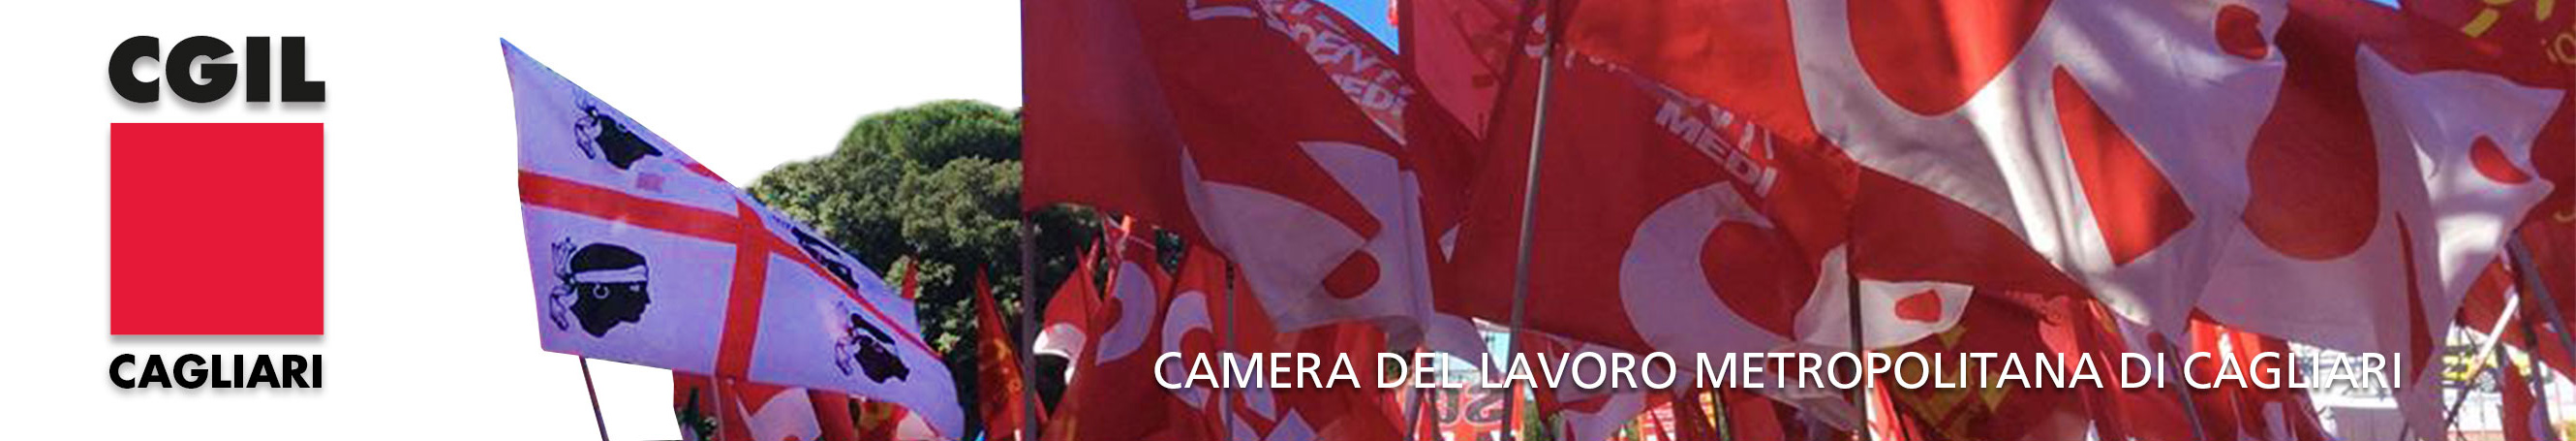 CGIL - Camera del Lavoro Metropolitana Cagliari